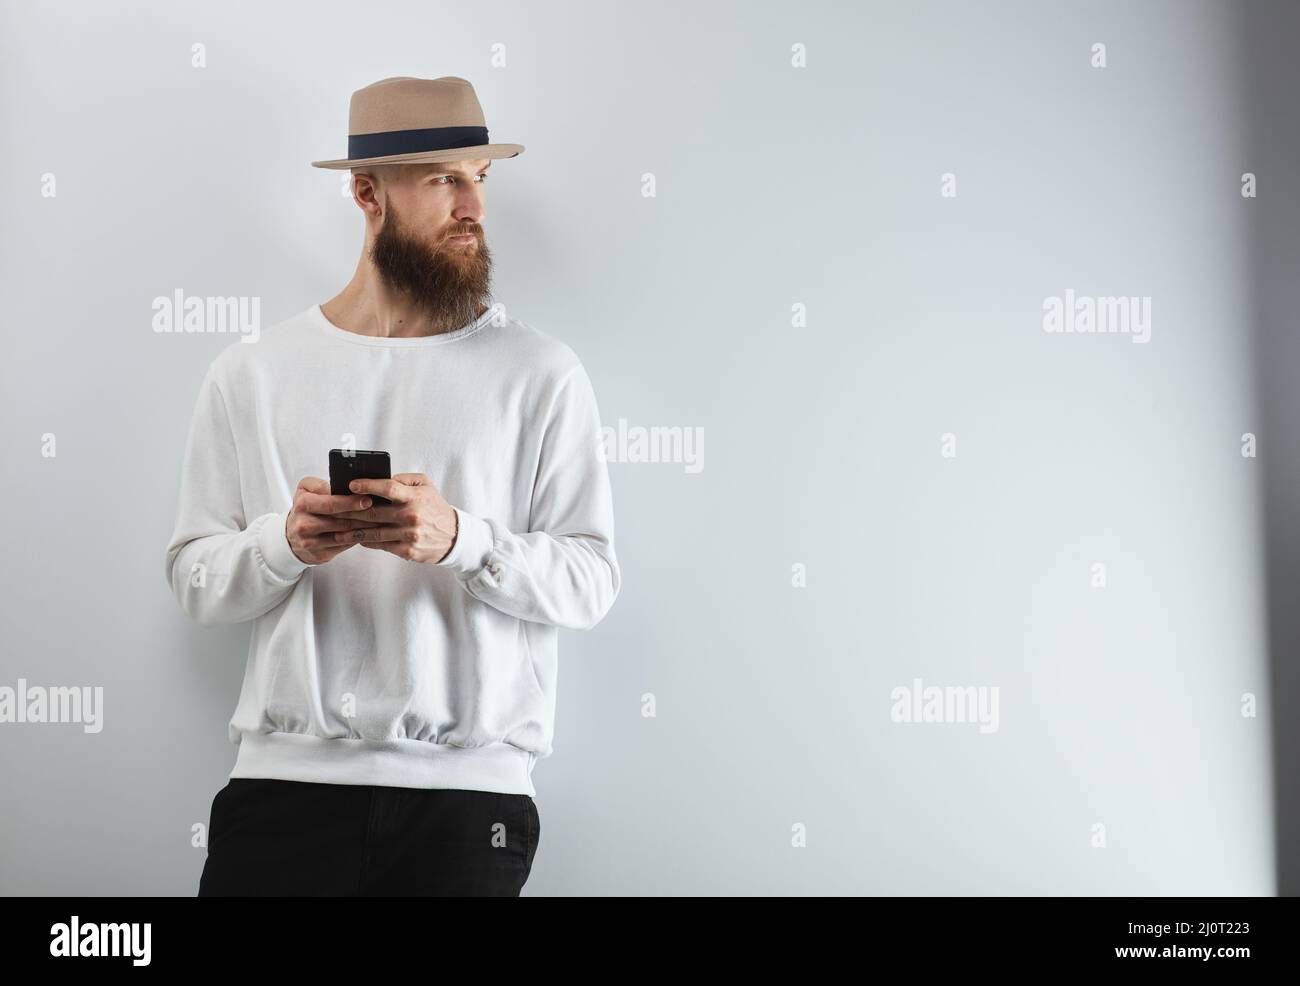 Ernsthafter bärtiger Mann im Hut, der mit einem Smartphone gegen eine weiße Wand steht. Stockfoto